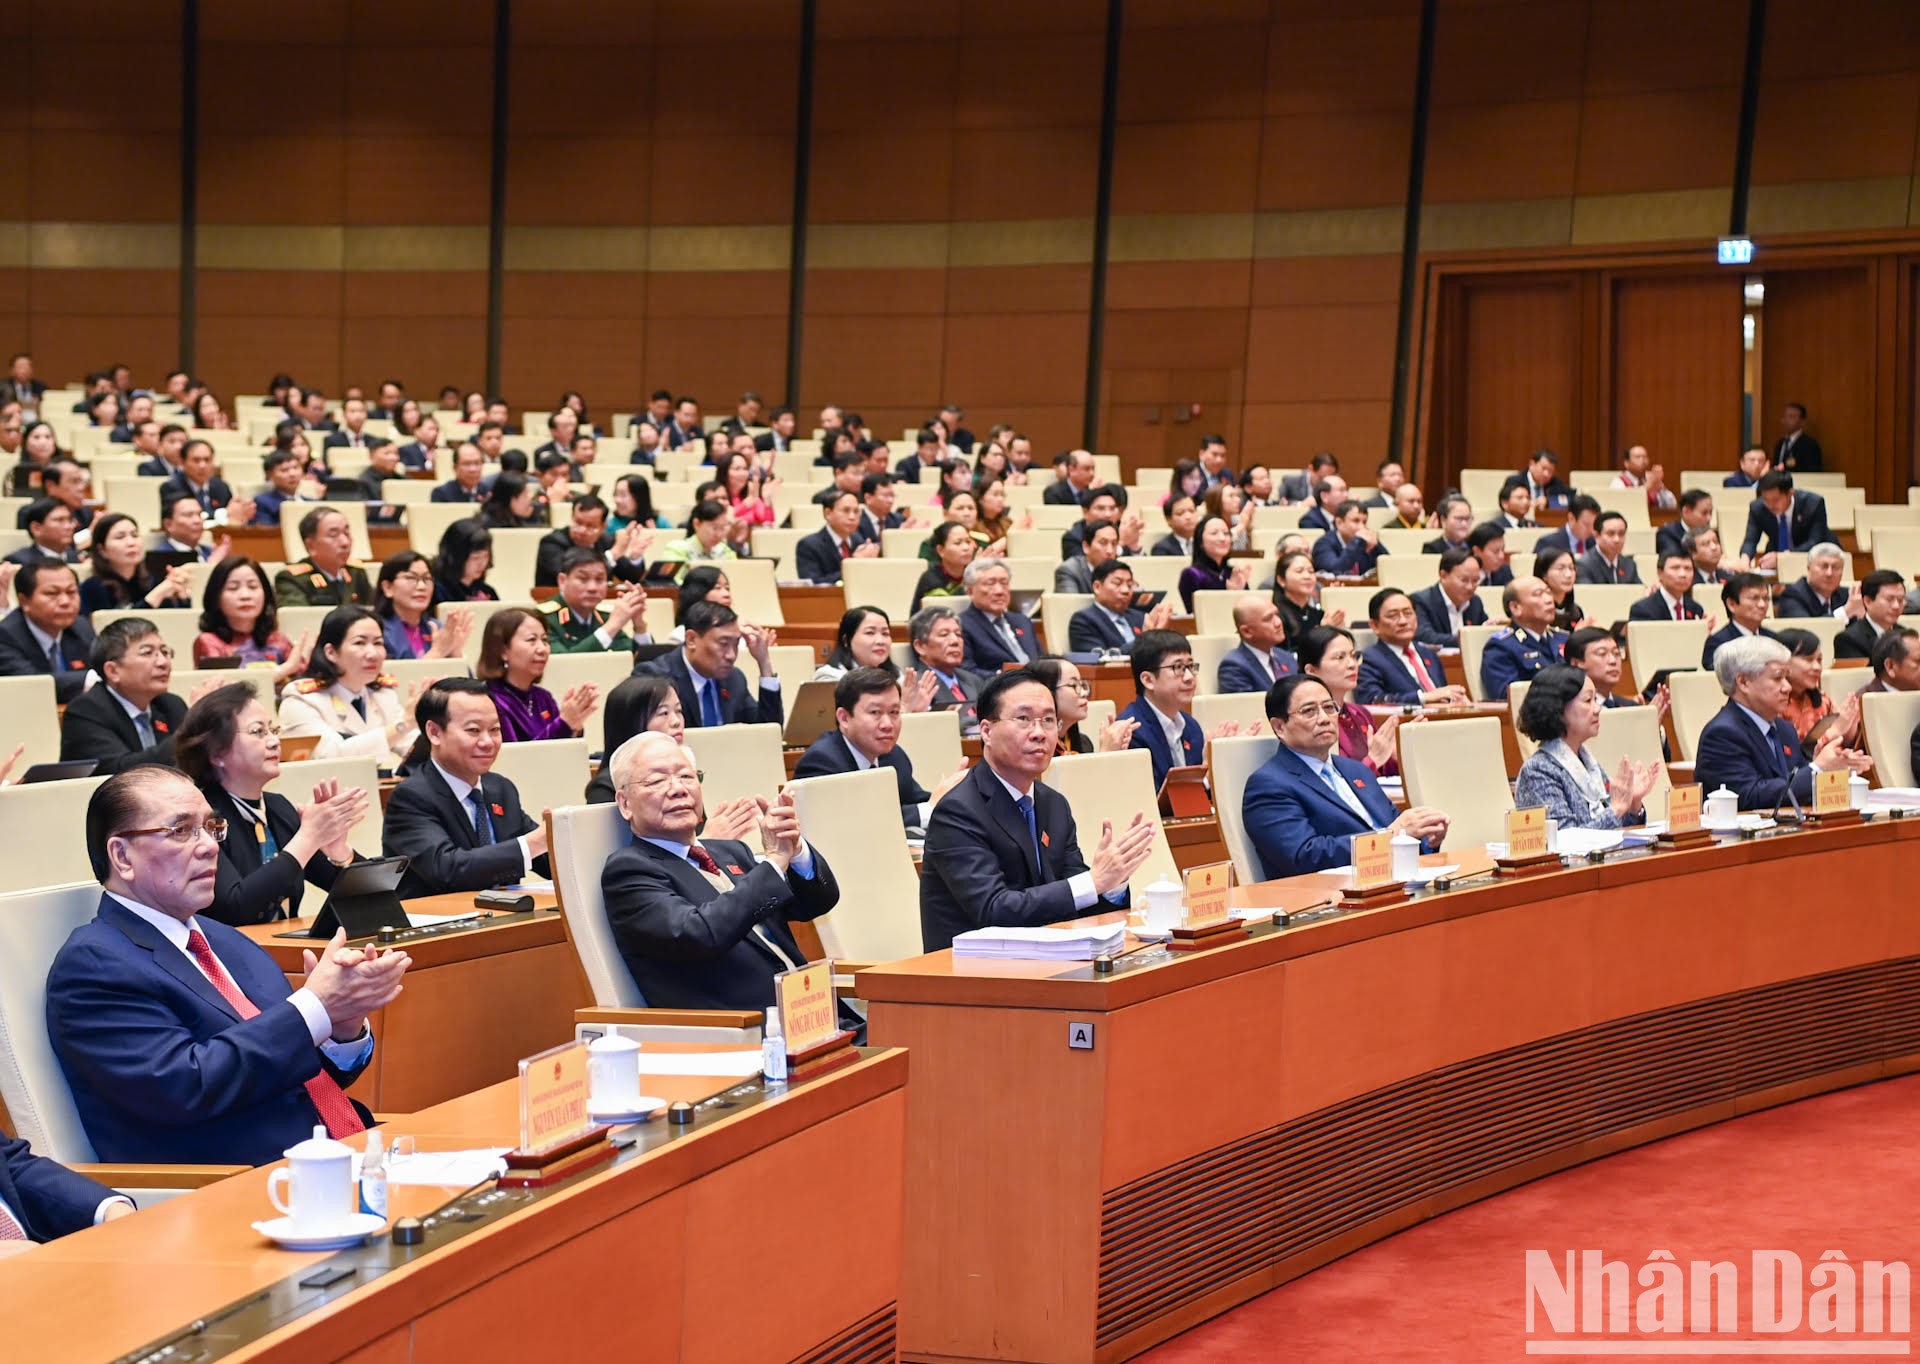 Tổng Bí thư Nguyễn Phú Trọng cùng các đồng chí lãnh đạo, nguyên lãnh đạo Đảng, Nhà nước và các đại biểu dự phiên khai mạc.